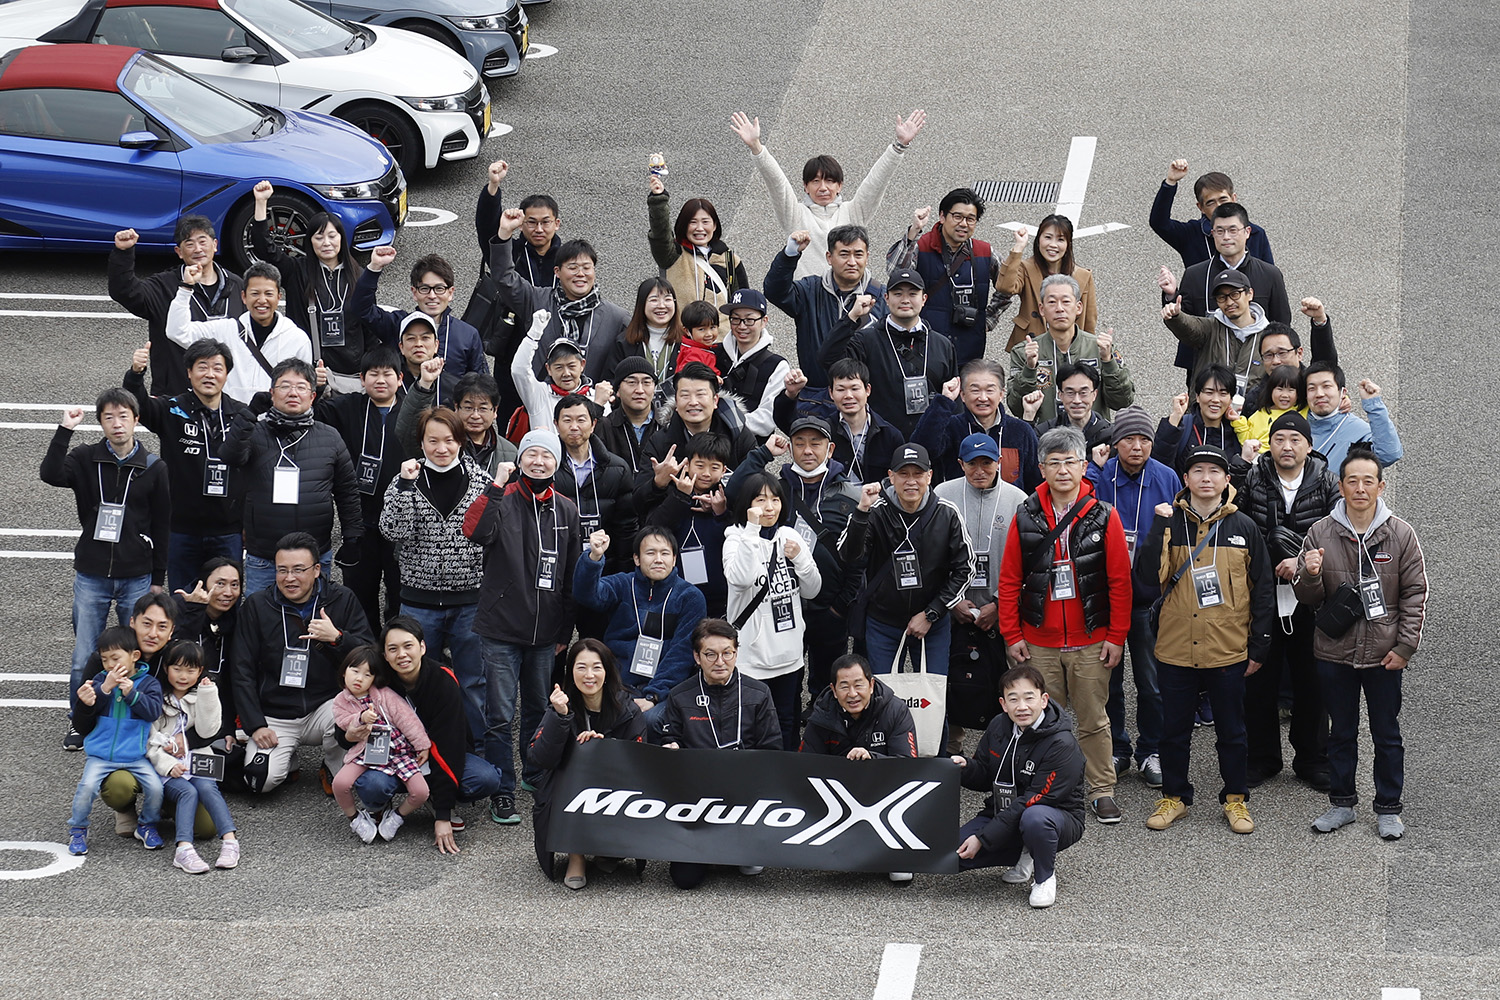 モデューロX10周年記念モーニングクルーズ参加者集合写真